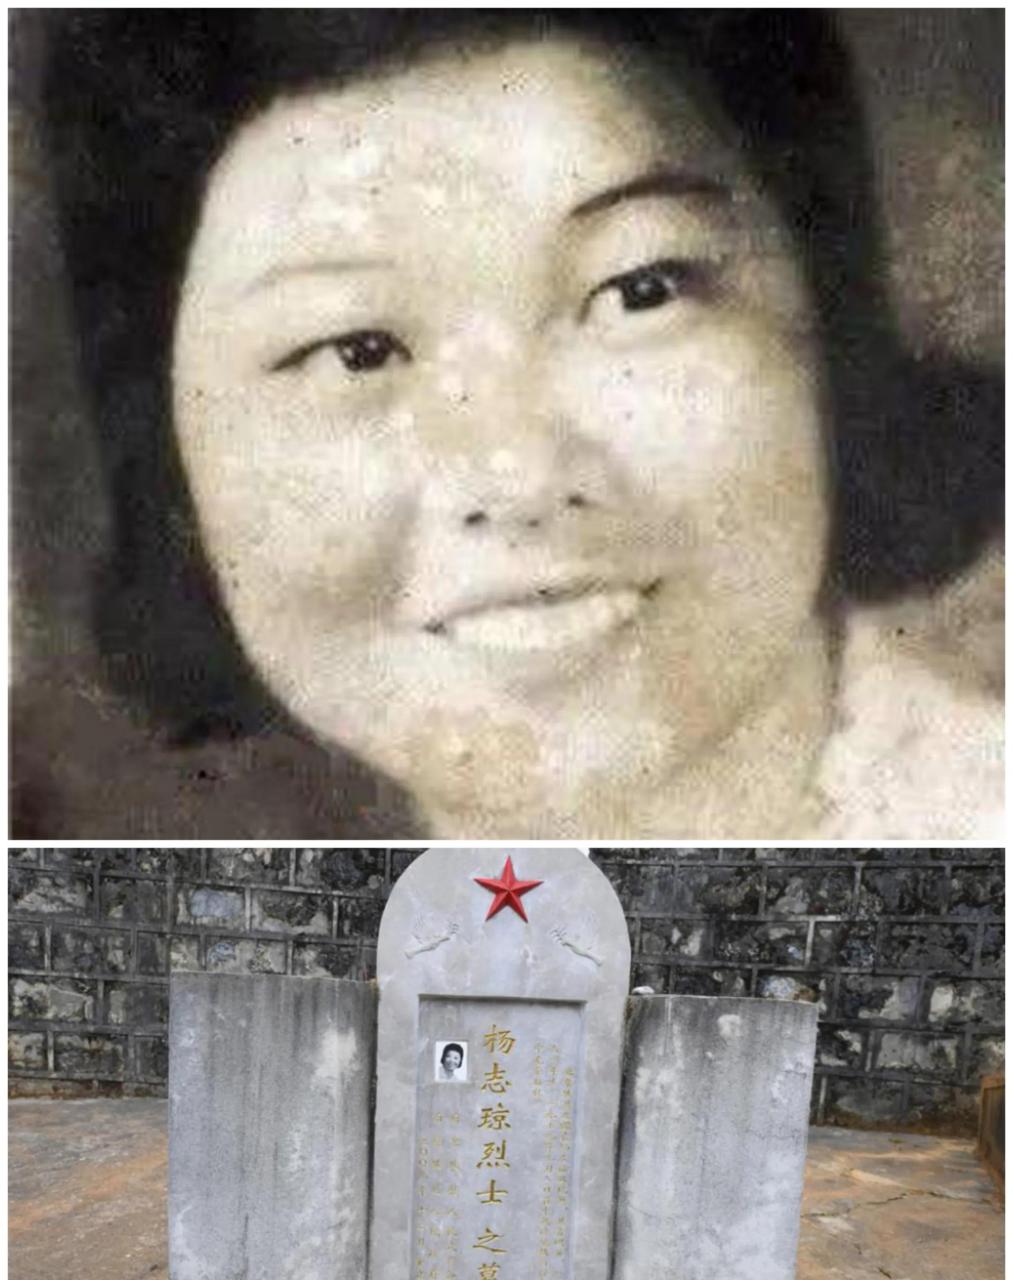 在残酷的自卫反击战中,我们一共牺牲两位女烈士,一位是在广西前线牺牲